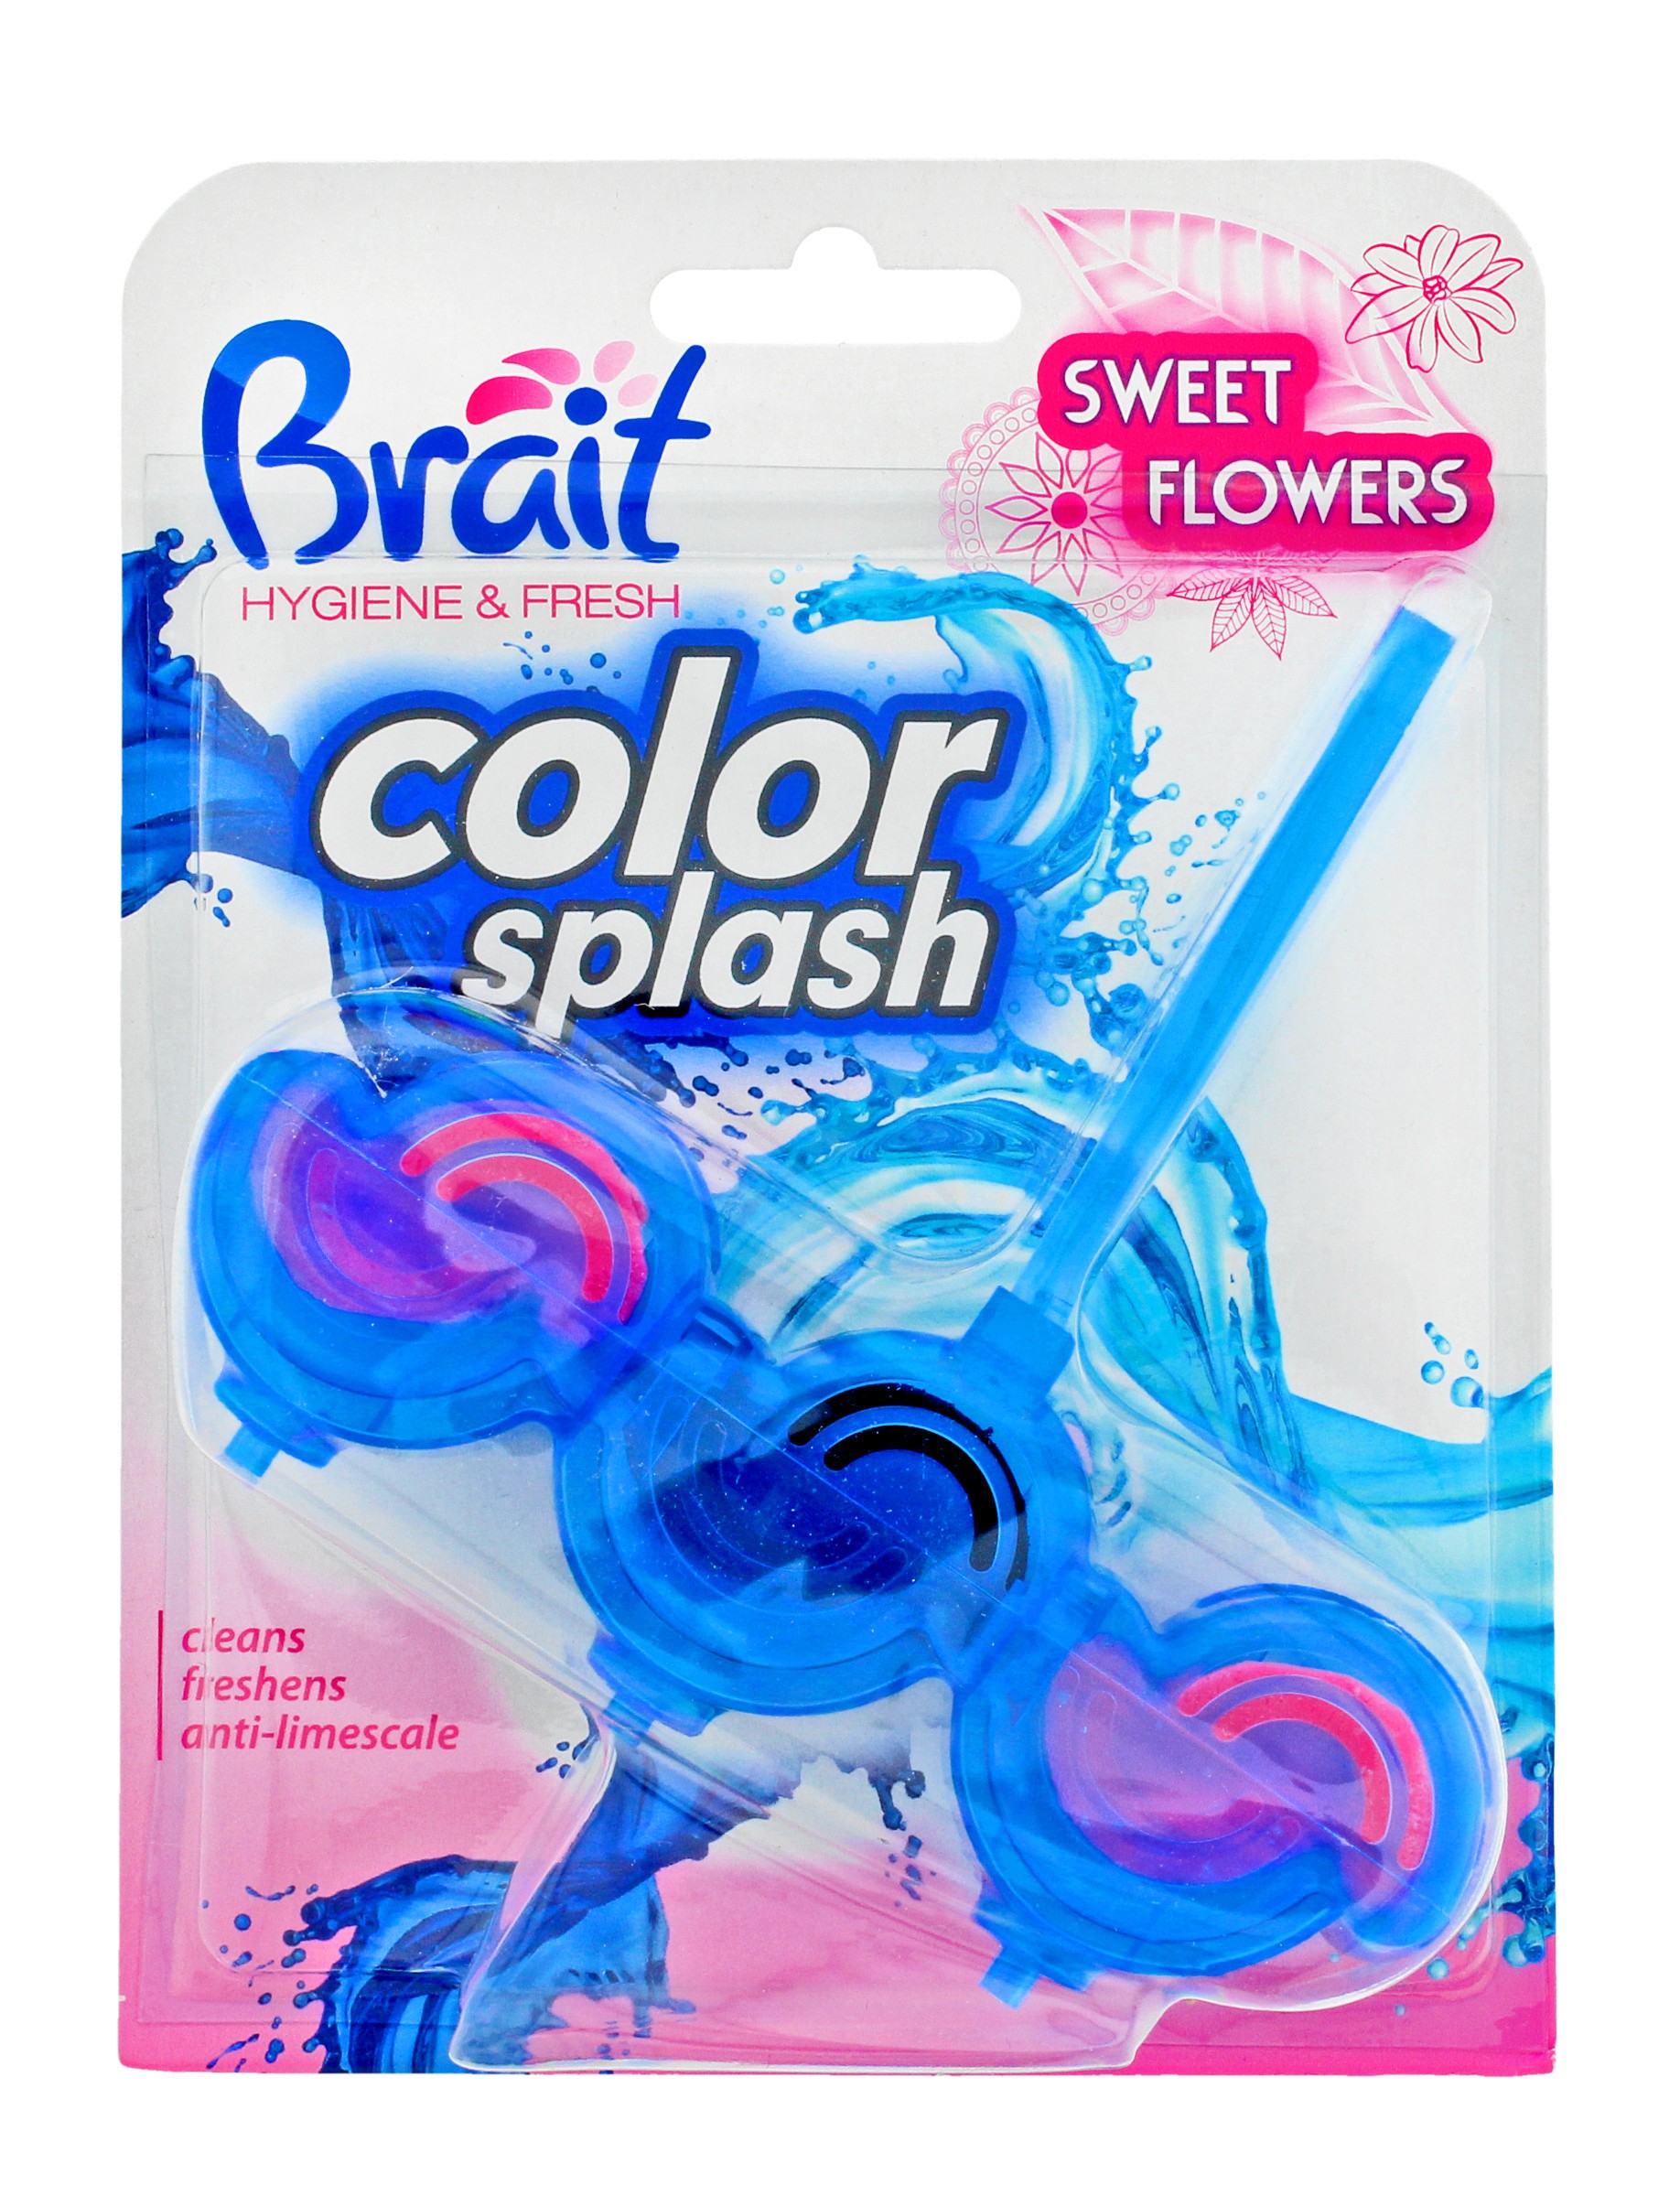 Brait Hygiene & Fresh Kostka toaletowa 2-fazowa Color Splash do WC Sweet Flowers  45g